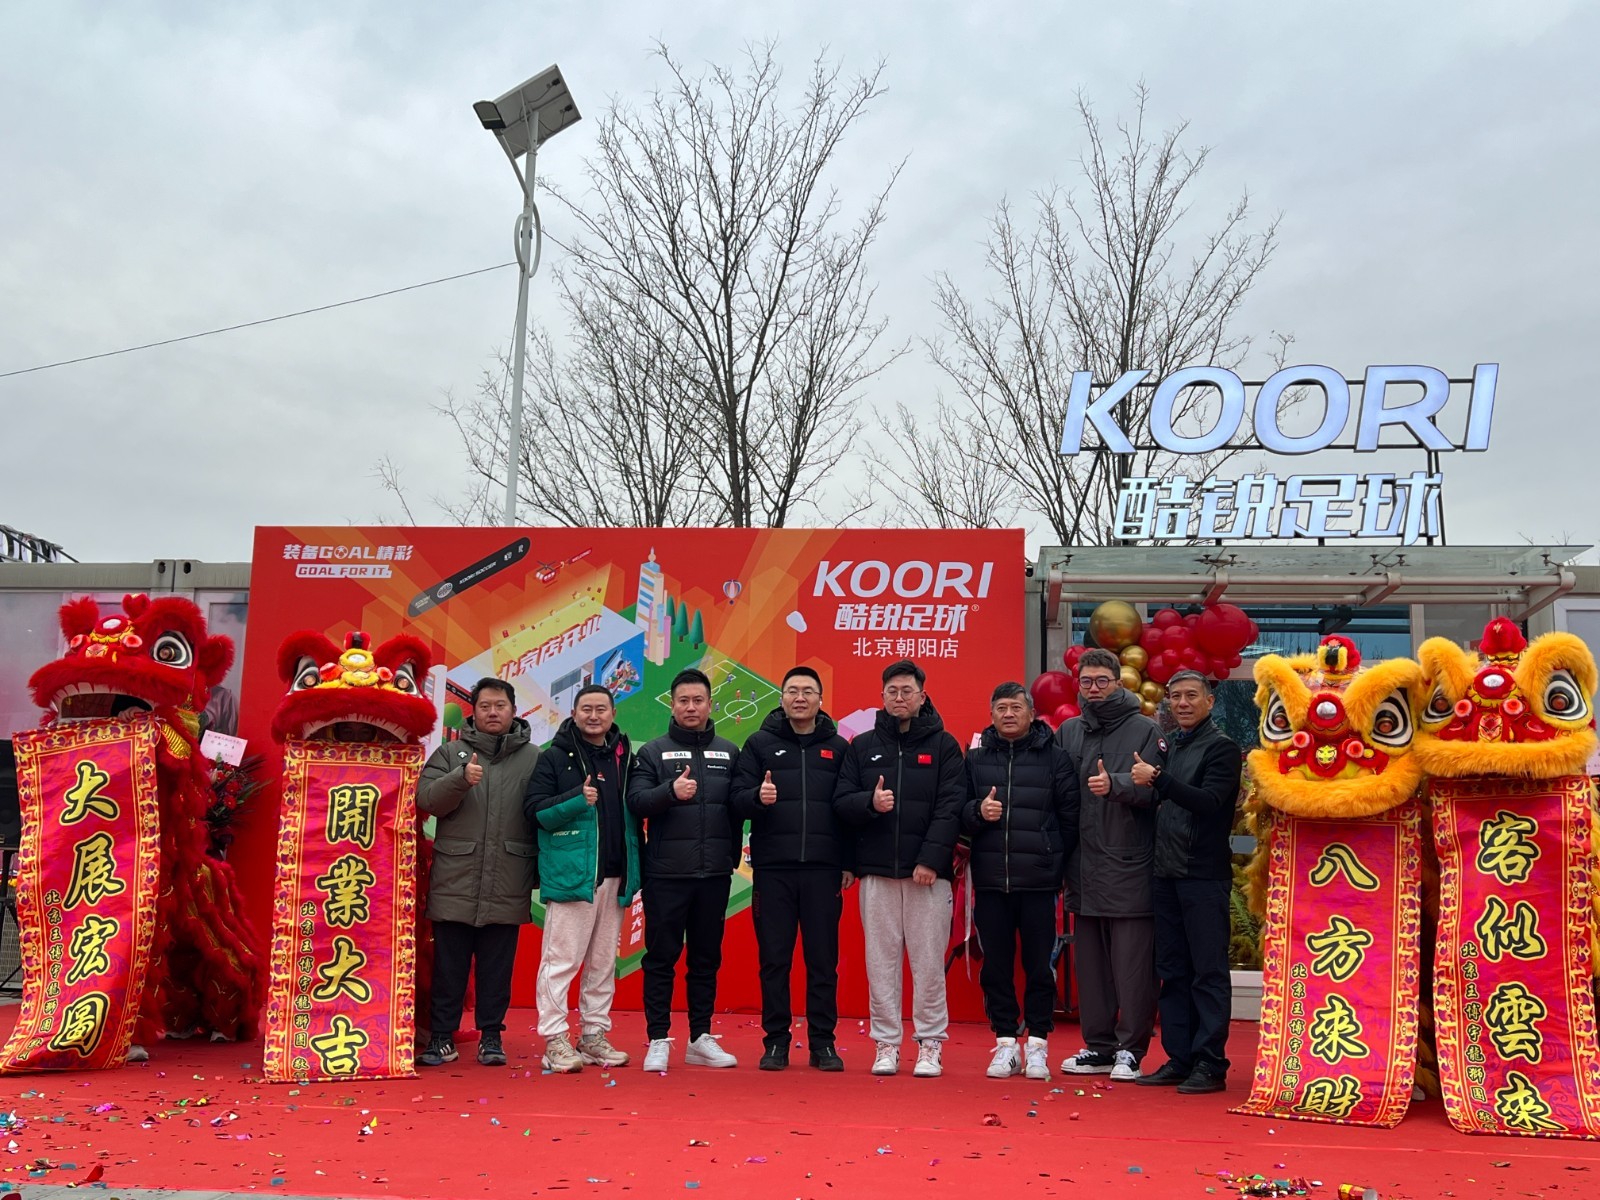 酷锐足球丨北京店12月10日正式开业  开业福利将持续至1月30日